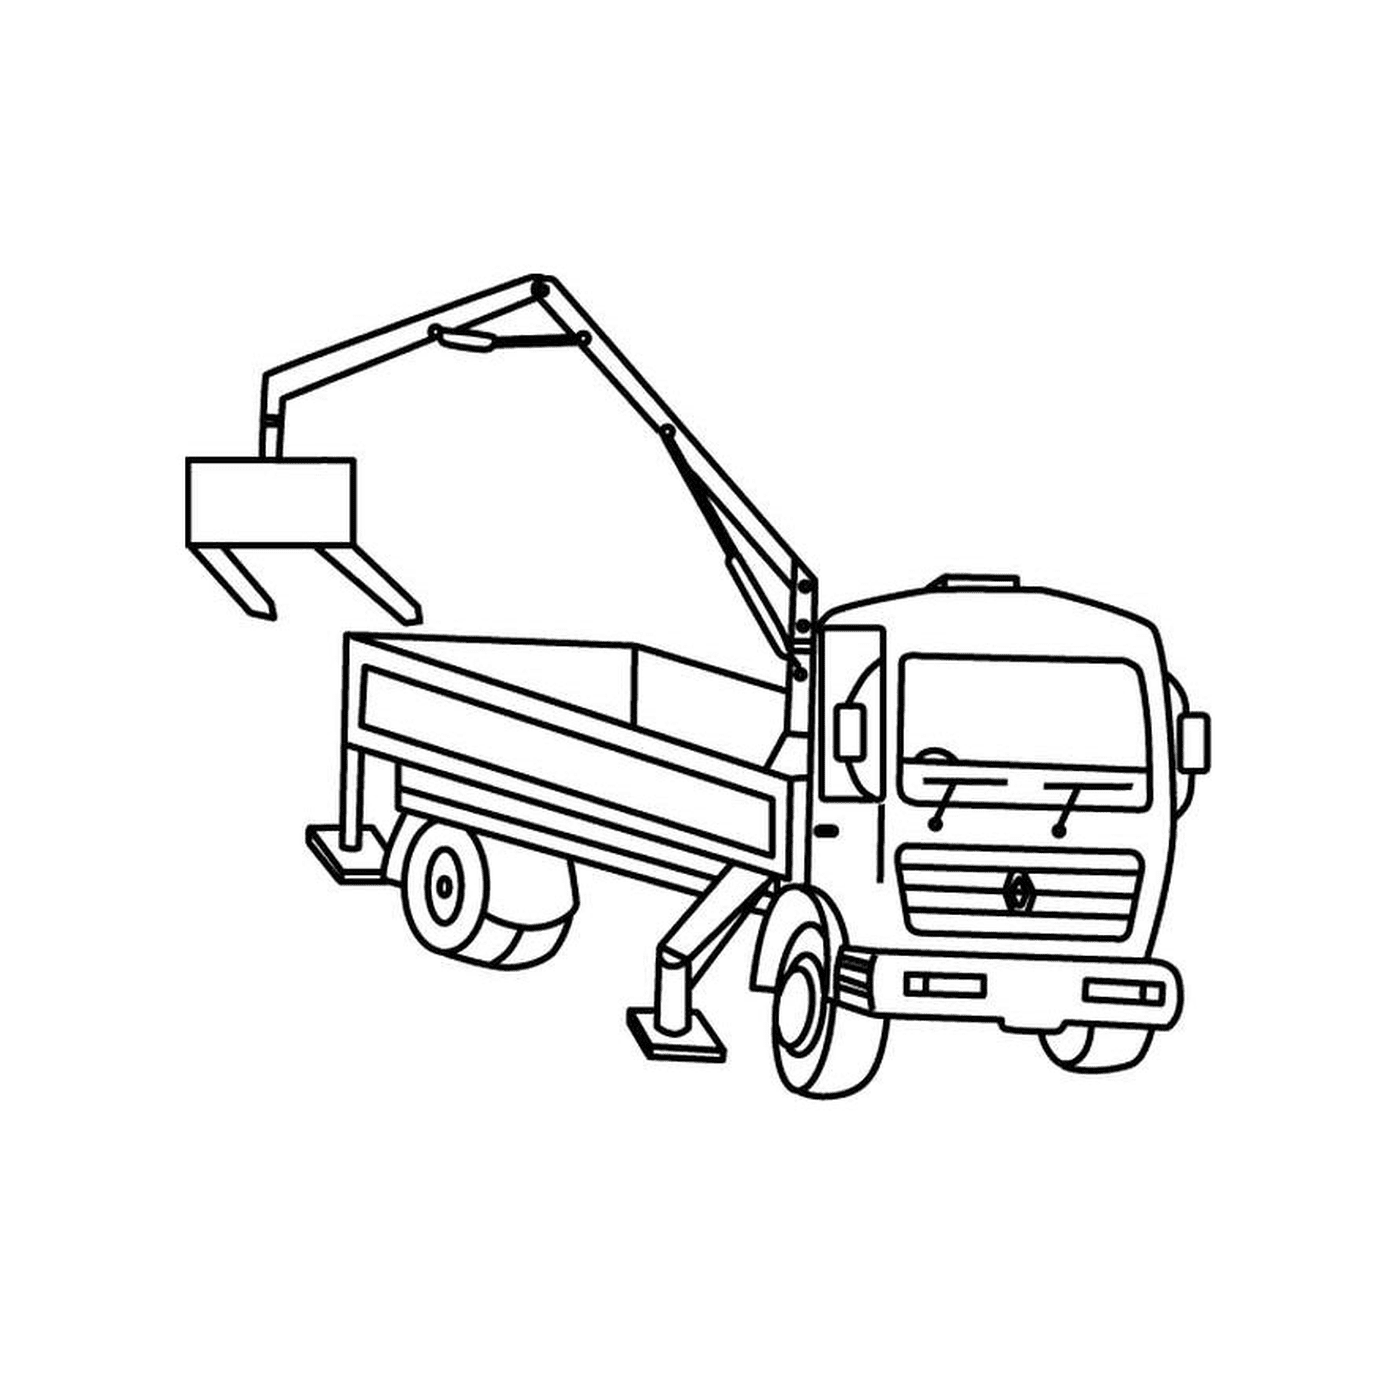  Dump truck raised by a crane 